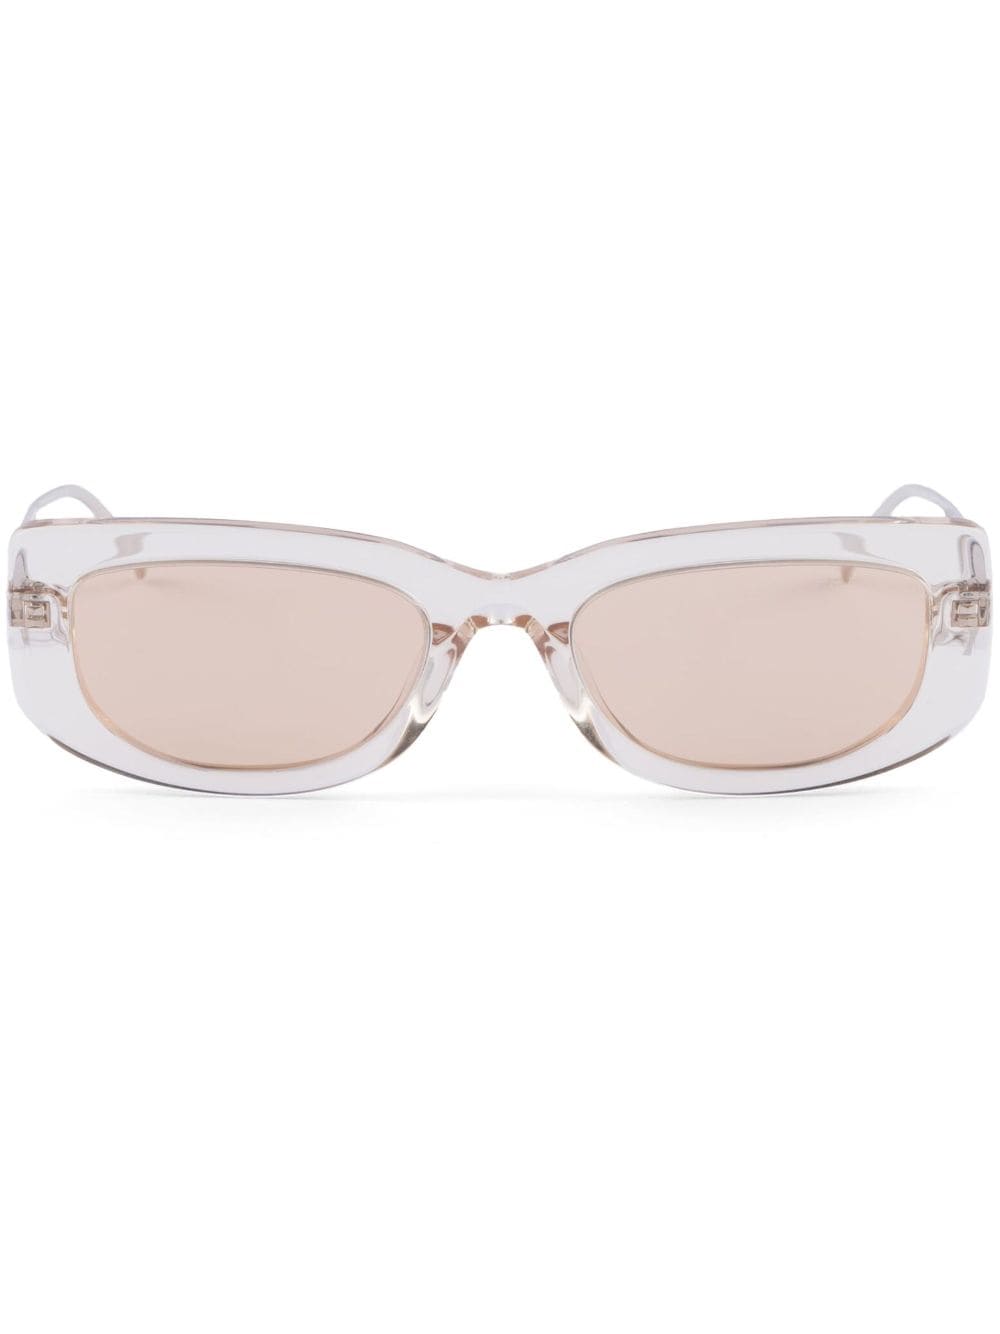 Prada Eyewear Sonnenbrille mit Sheer-Effekt - Nude von Prada Eyewear